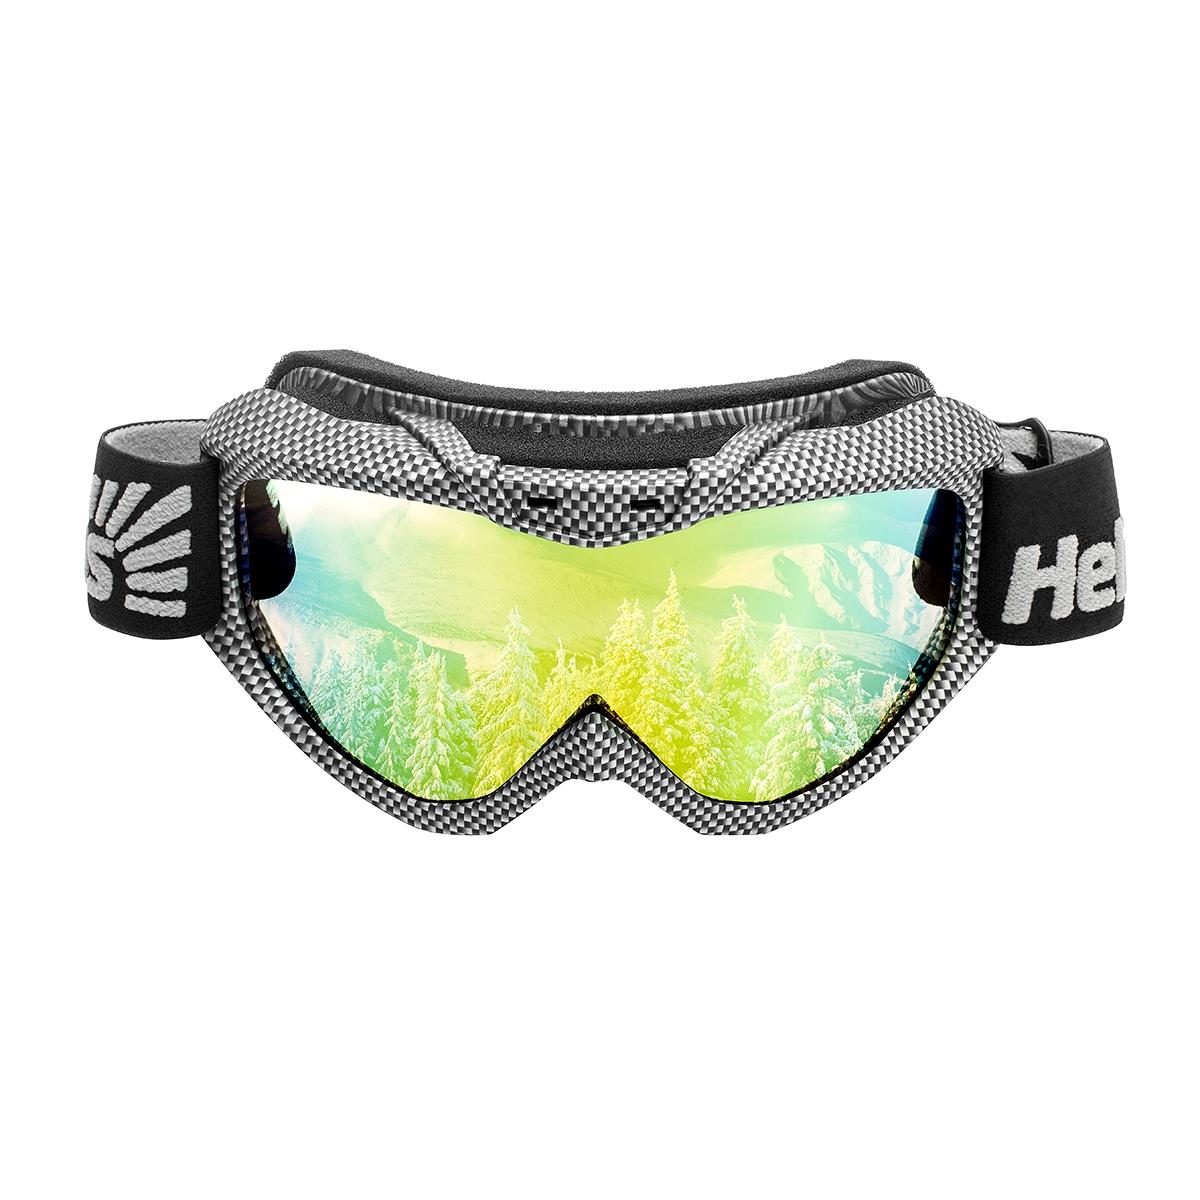 Очки горнолыжные HS-MT-001 Helios очки полумаска для плавания с берушами детские uv защита